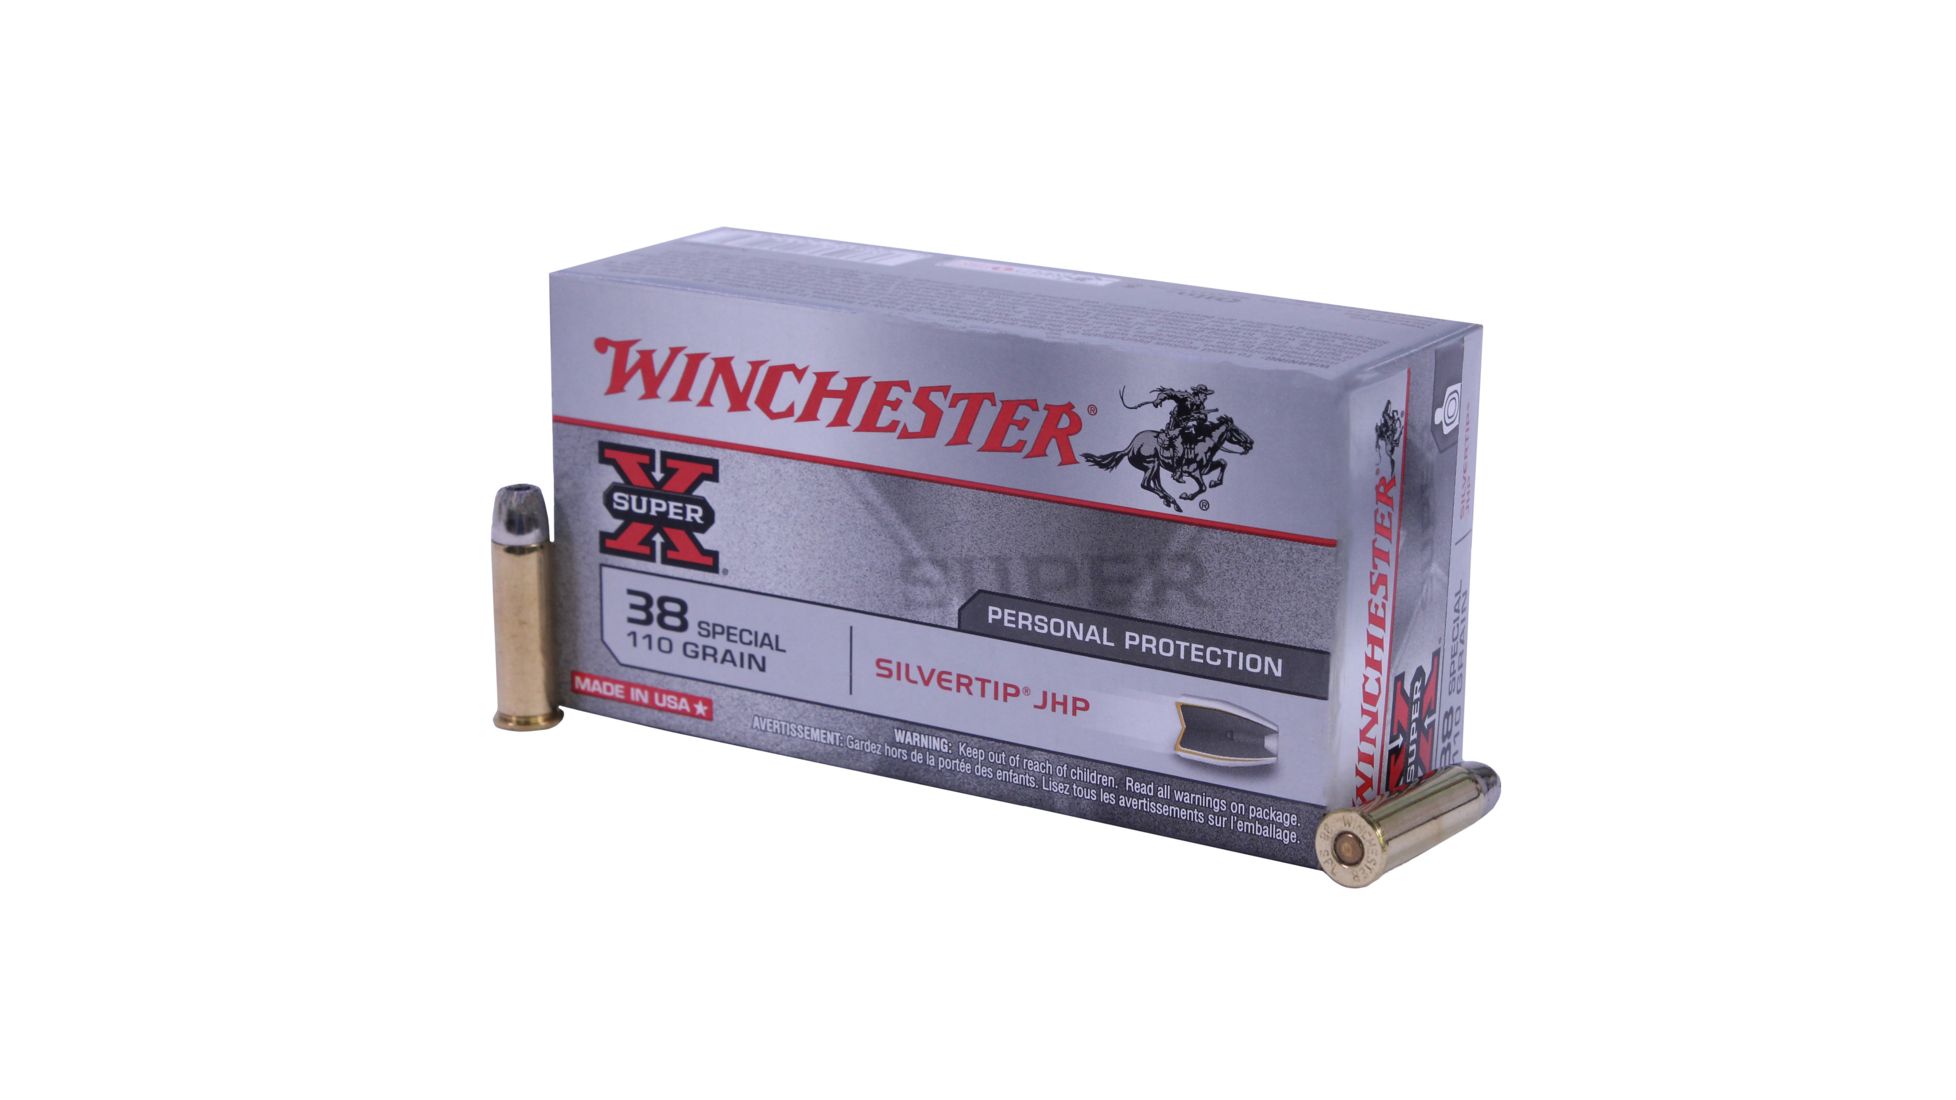 Winchester Super X Handgun 38 Special 110 Grain Silvertip Jacketed Hollow Point Brass Cased 